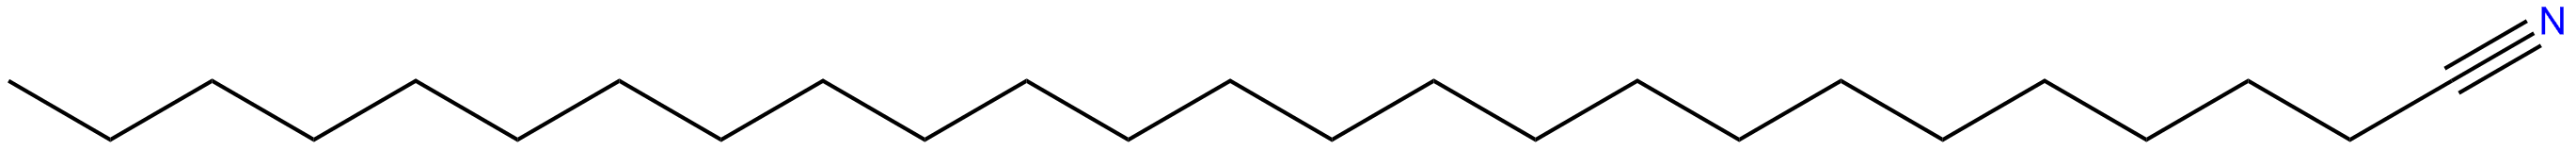 Image of pentacosanenitrile